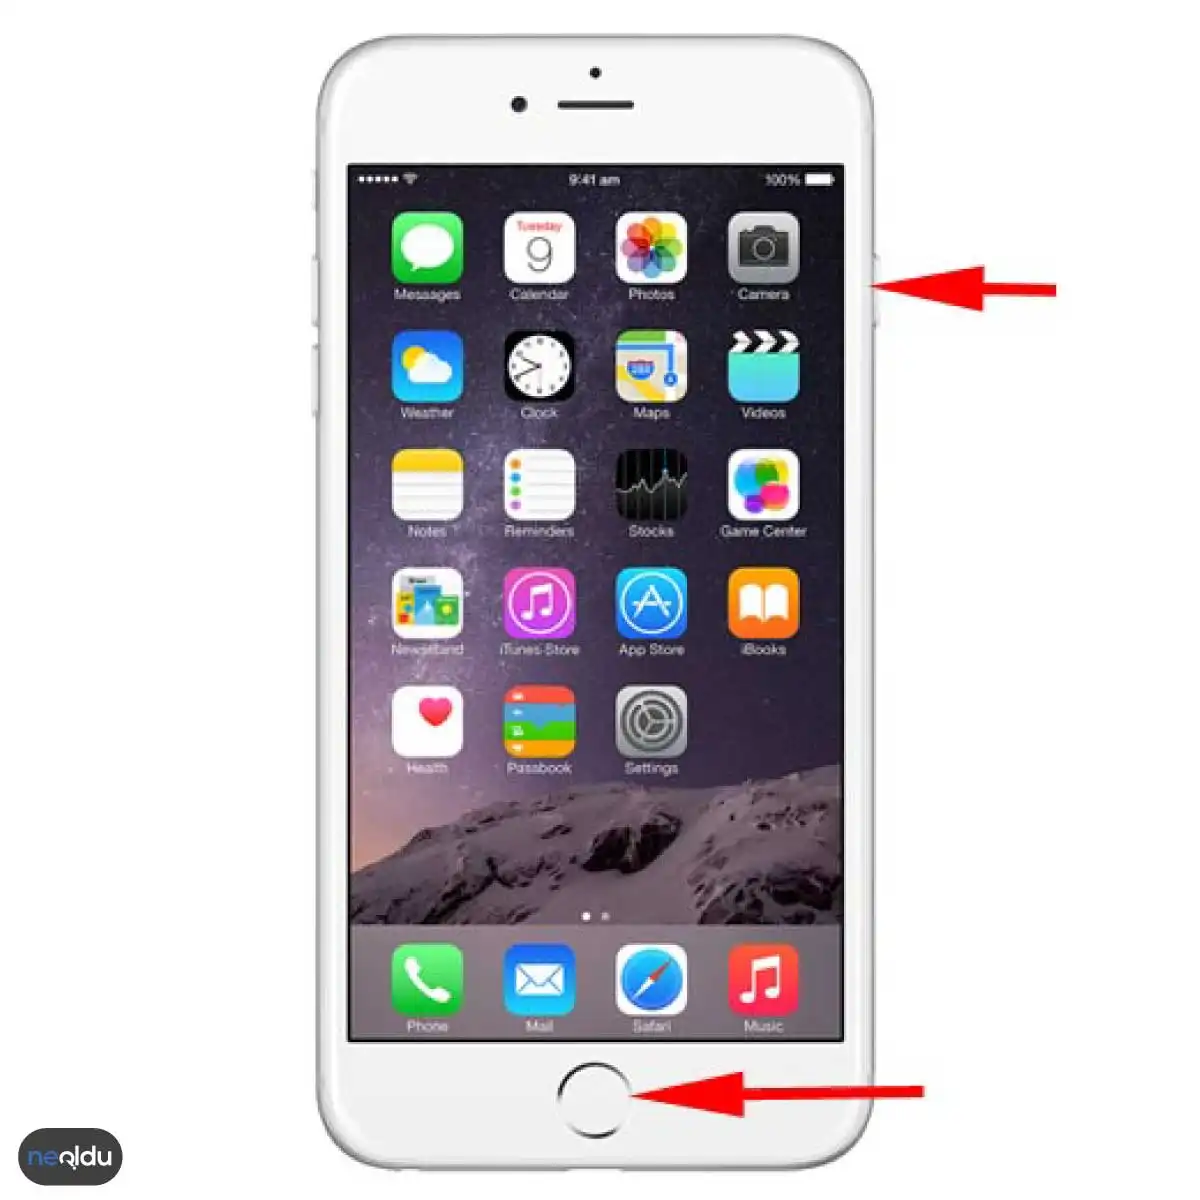 iPhone Telefonlarda Ekran Görüntüsü Nasıl Alınır?